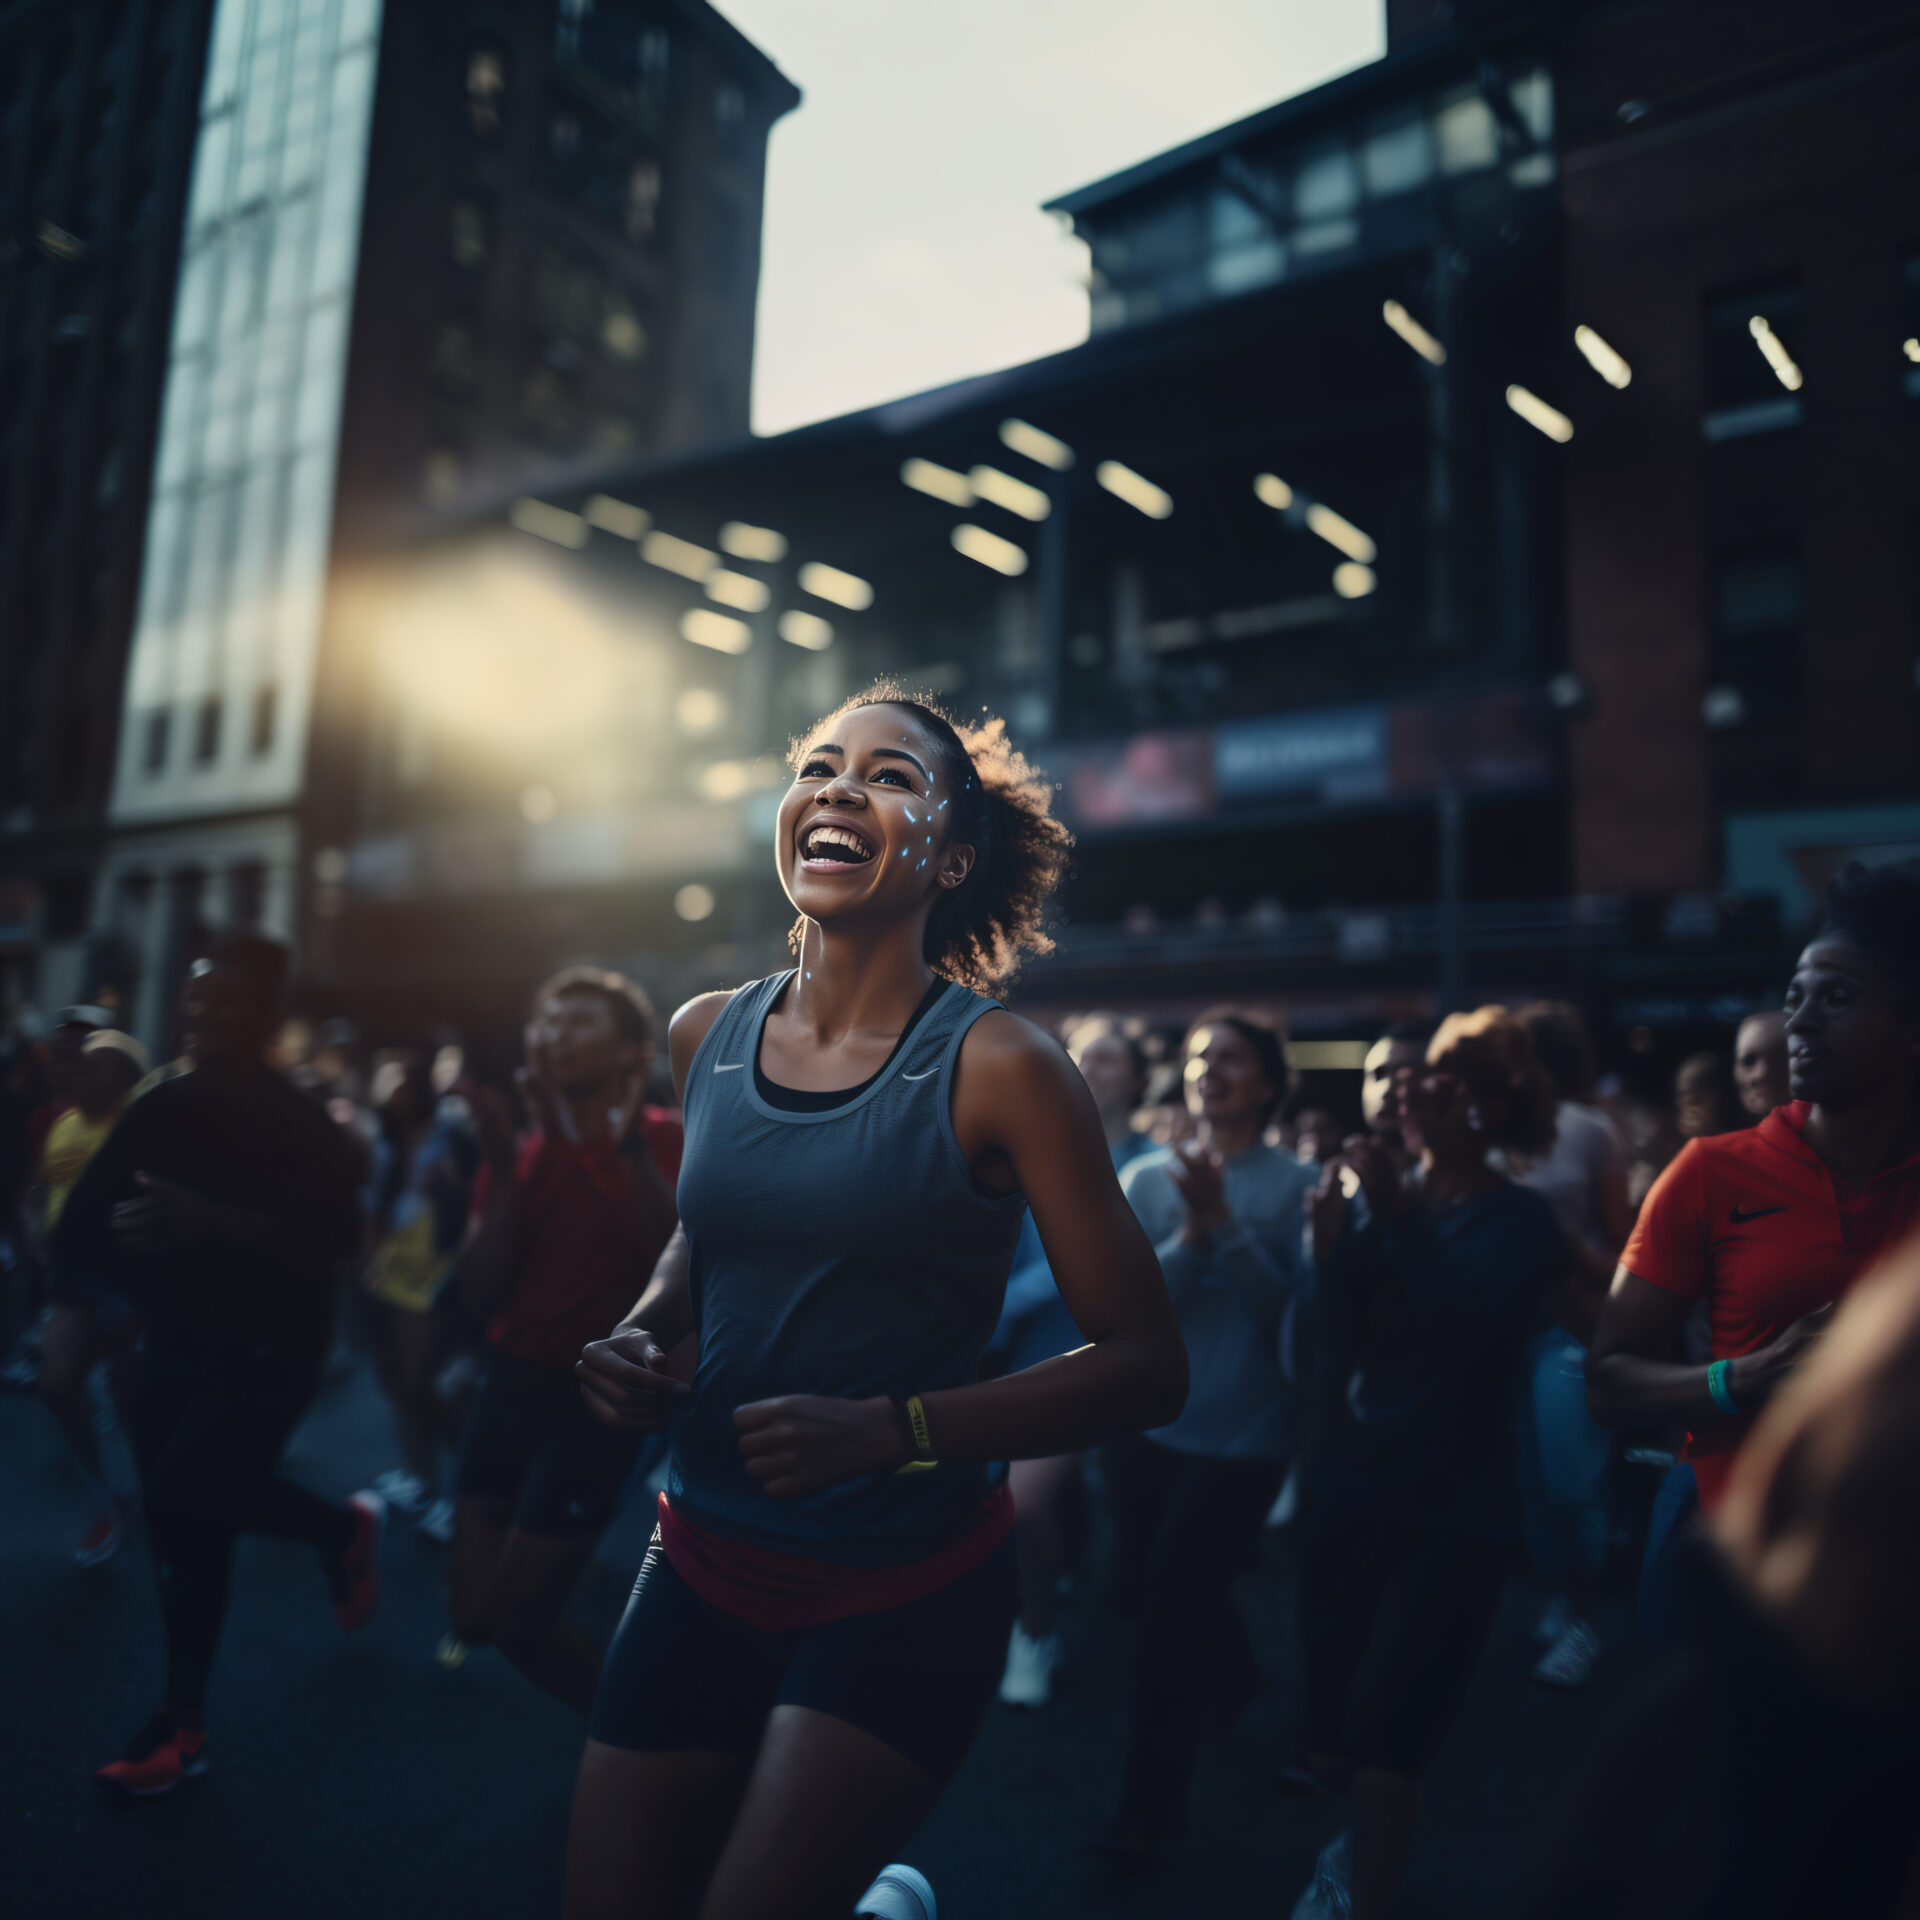 Laufen als Stressabbau: Wie du Stress abbauen kannst